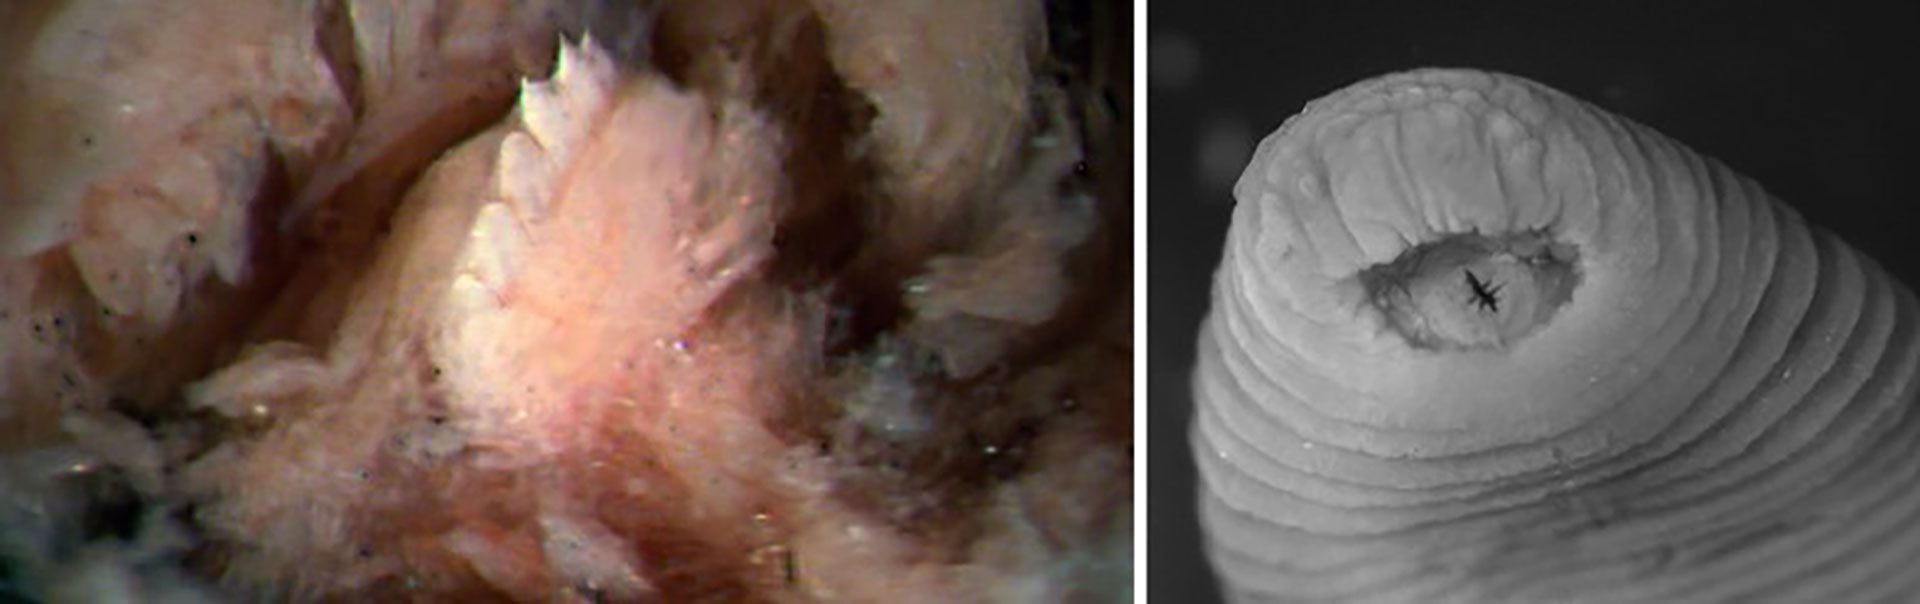 La sanguijuela tiene dientes inisuales y largos, aunque sus mordiscos son "relativamente pequeños", según los científicos (Gentileza: Phillips AJ, Arauco-Brown R, Oceguera-Figueroa A, Gomez GP, Beltrán M, Lai YT)